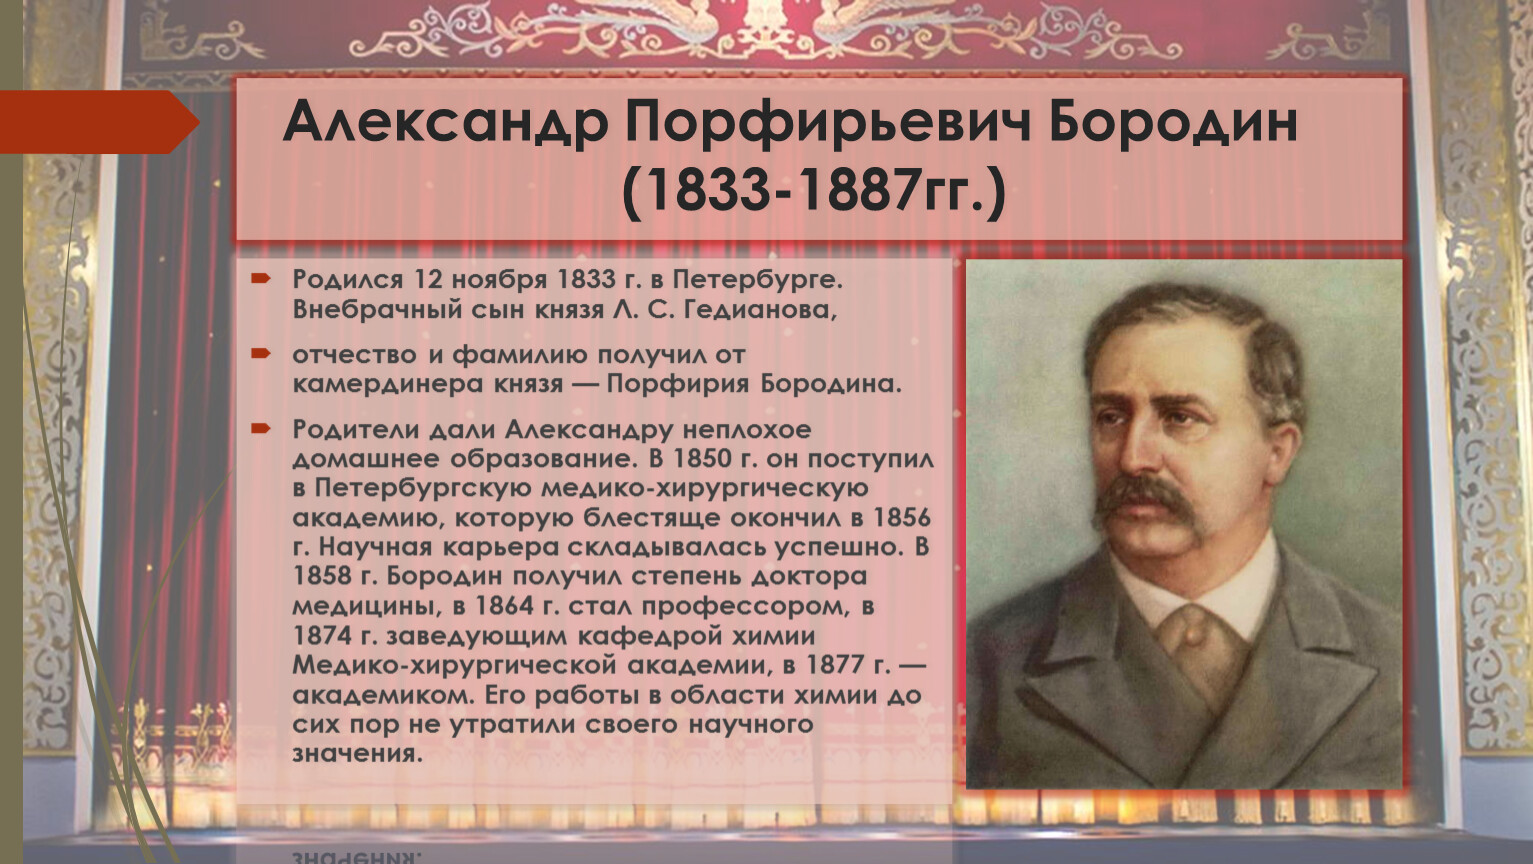 Бородин Александр Порфирьевич